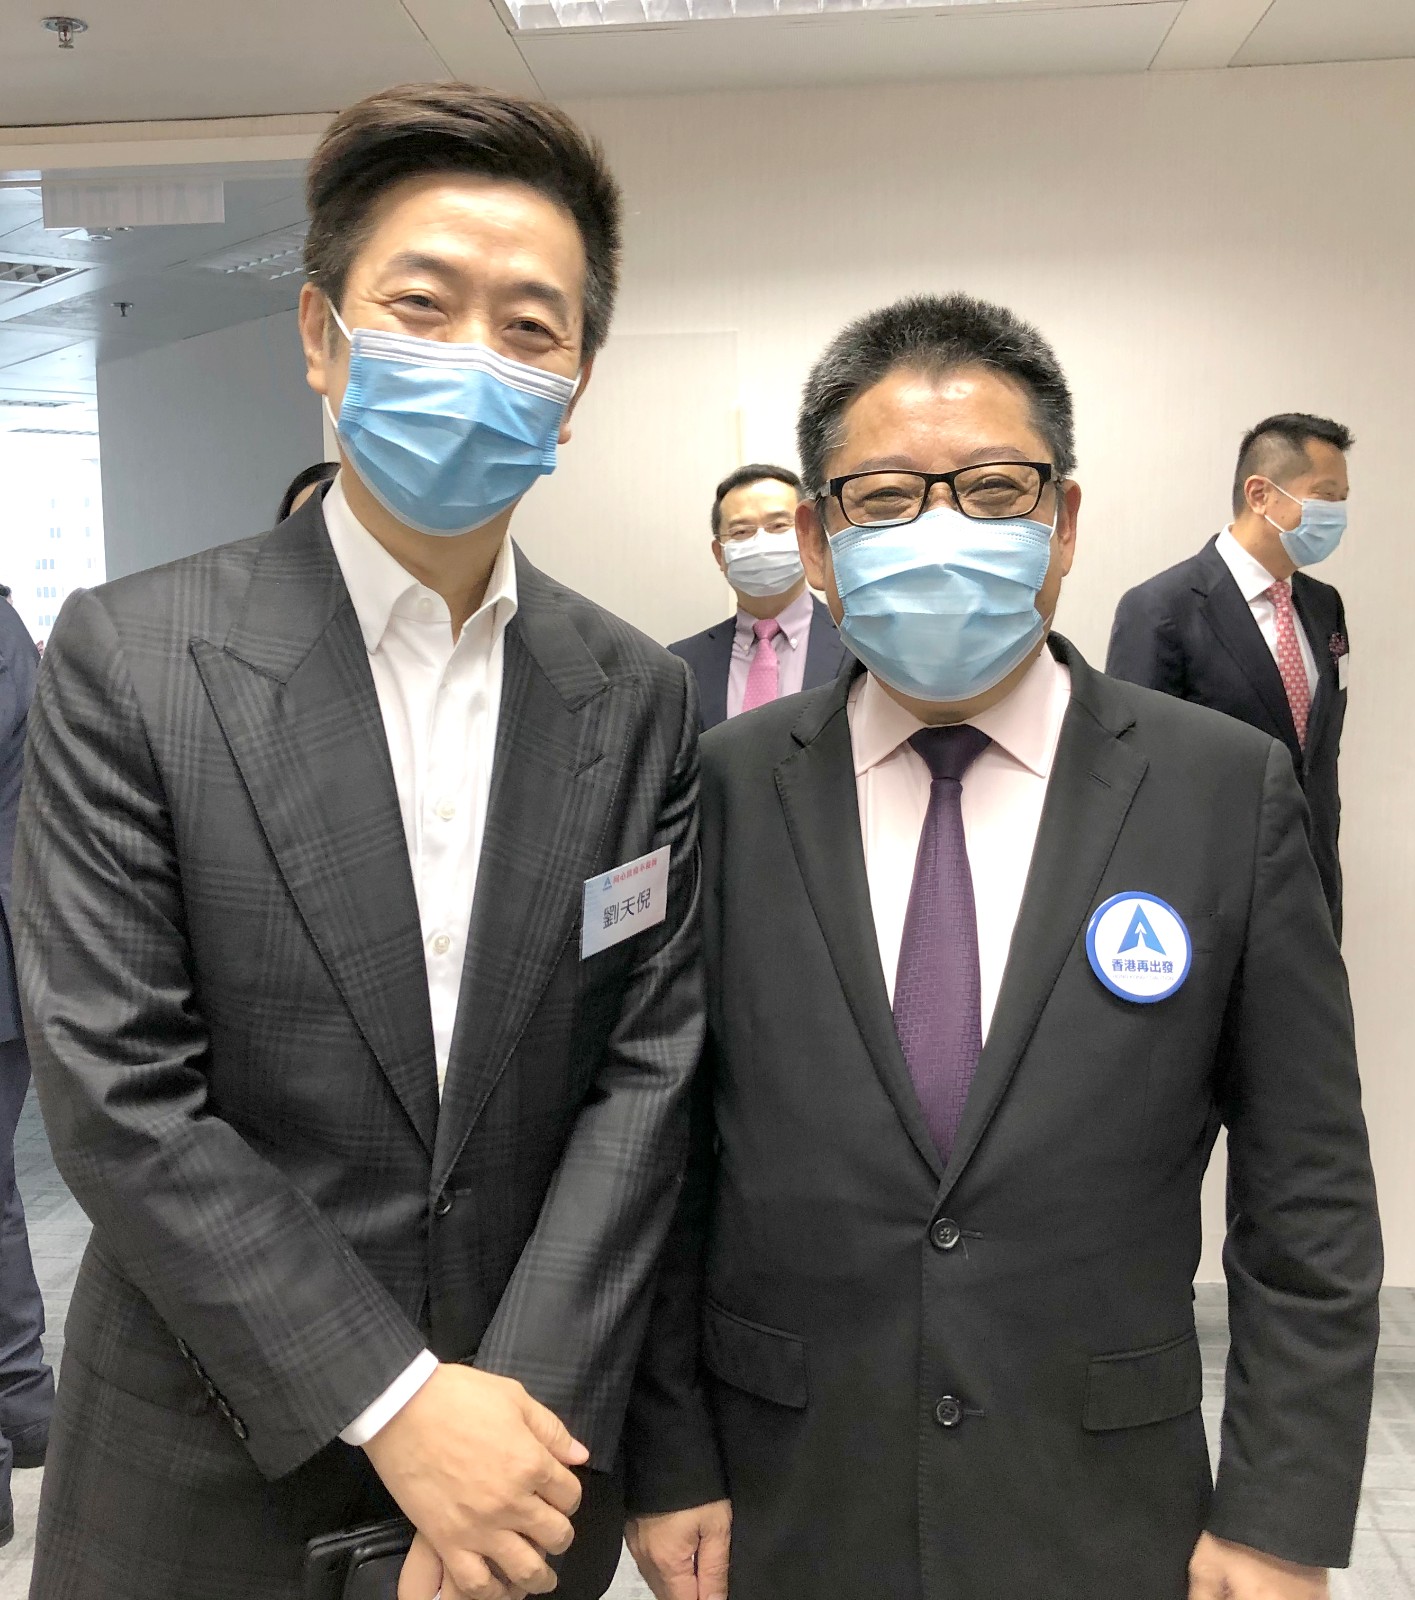 蘇長榮理事長出席香港再出發大聯盟 -​「同心抗疫不裁員」記者會​-0